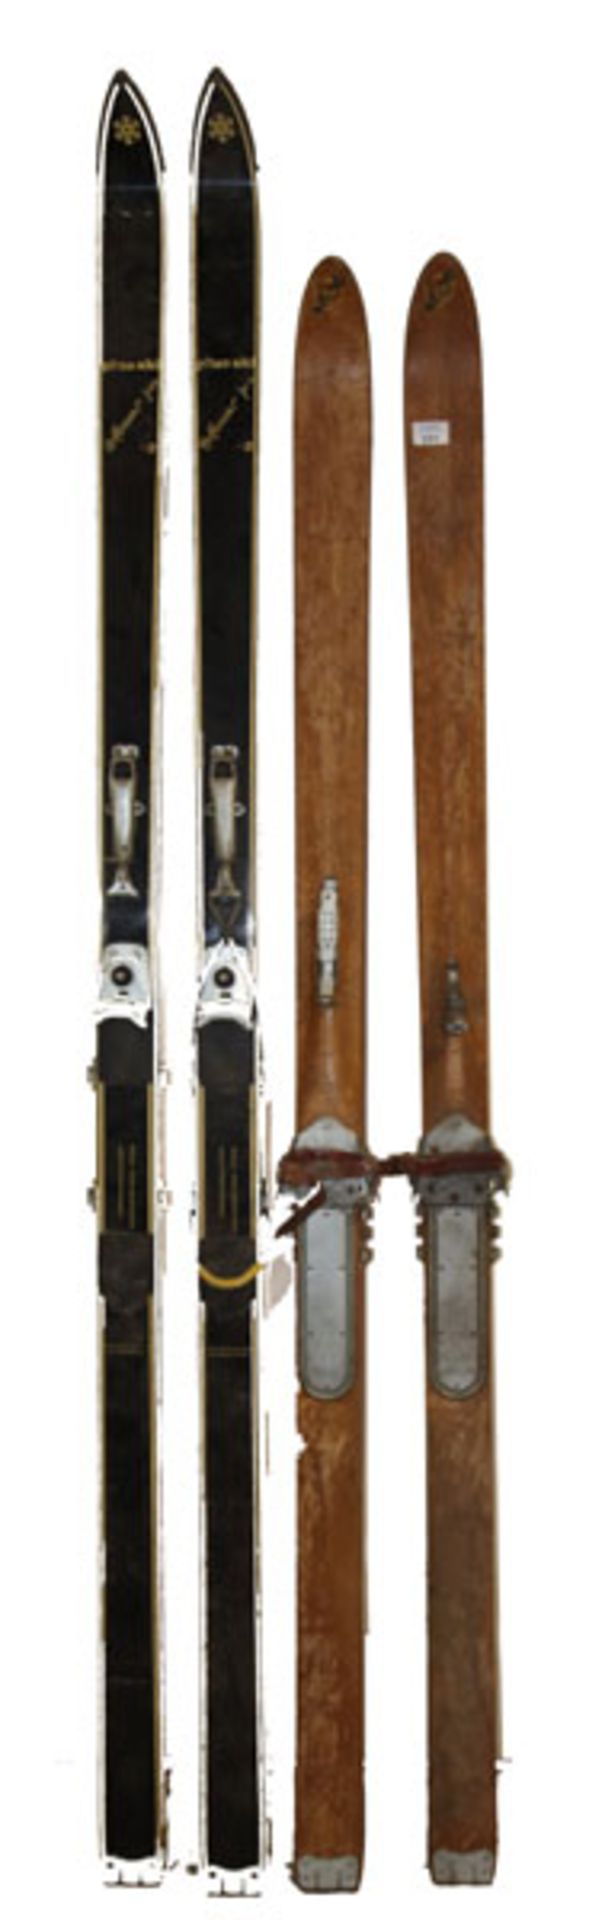 Paar Holzski mit Riemenbindung, L 180 cm, und Paar Ski und Silvretta Bindung, L 198 cm,